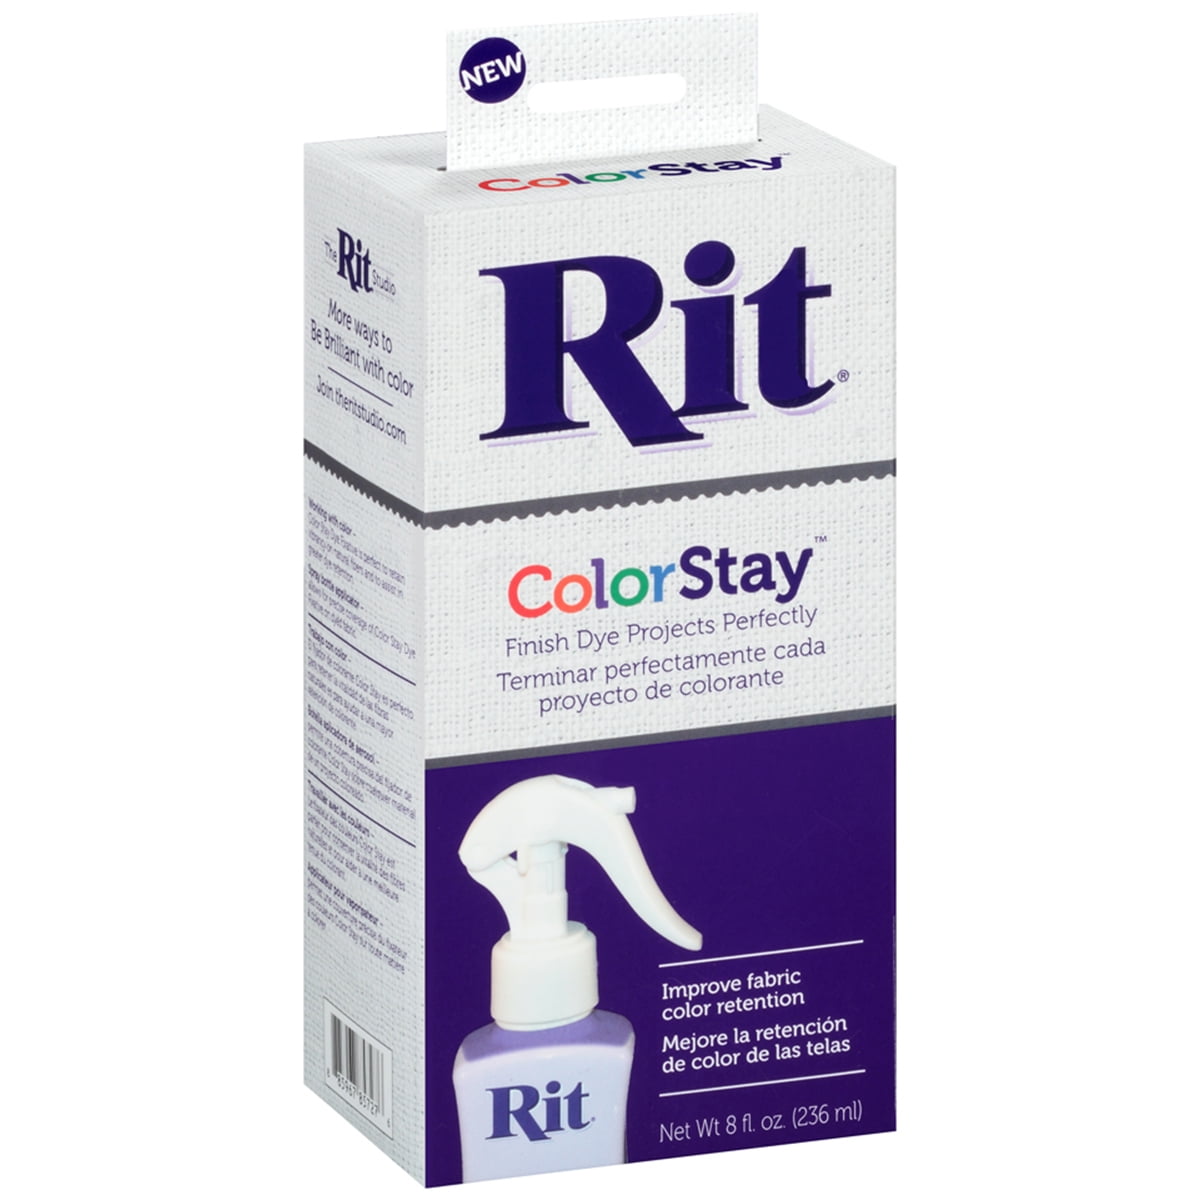 Rit ColorStay Dye Fixative, Liquid Dyeing Aid, 8 fl oz 